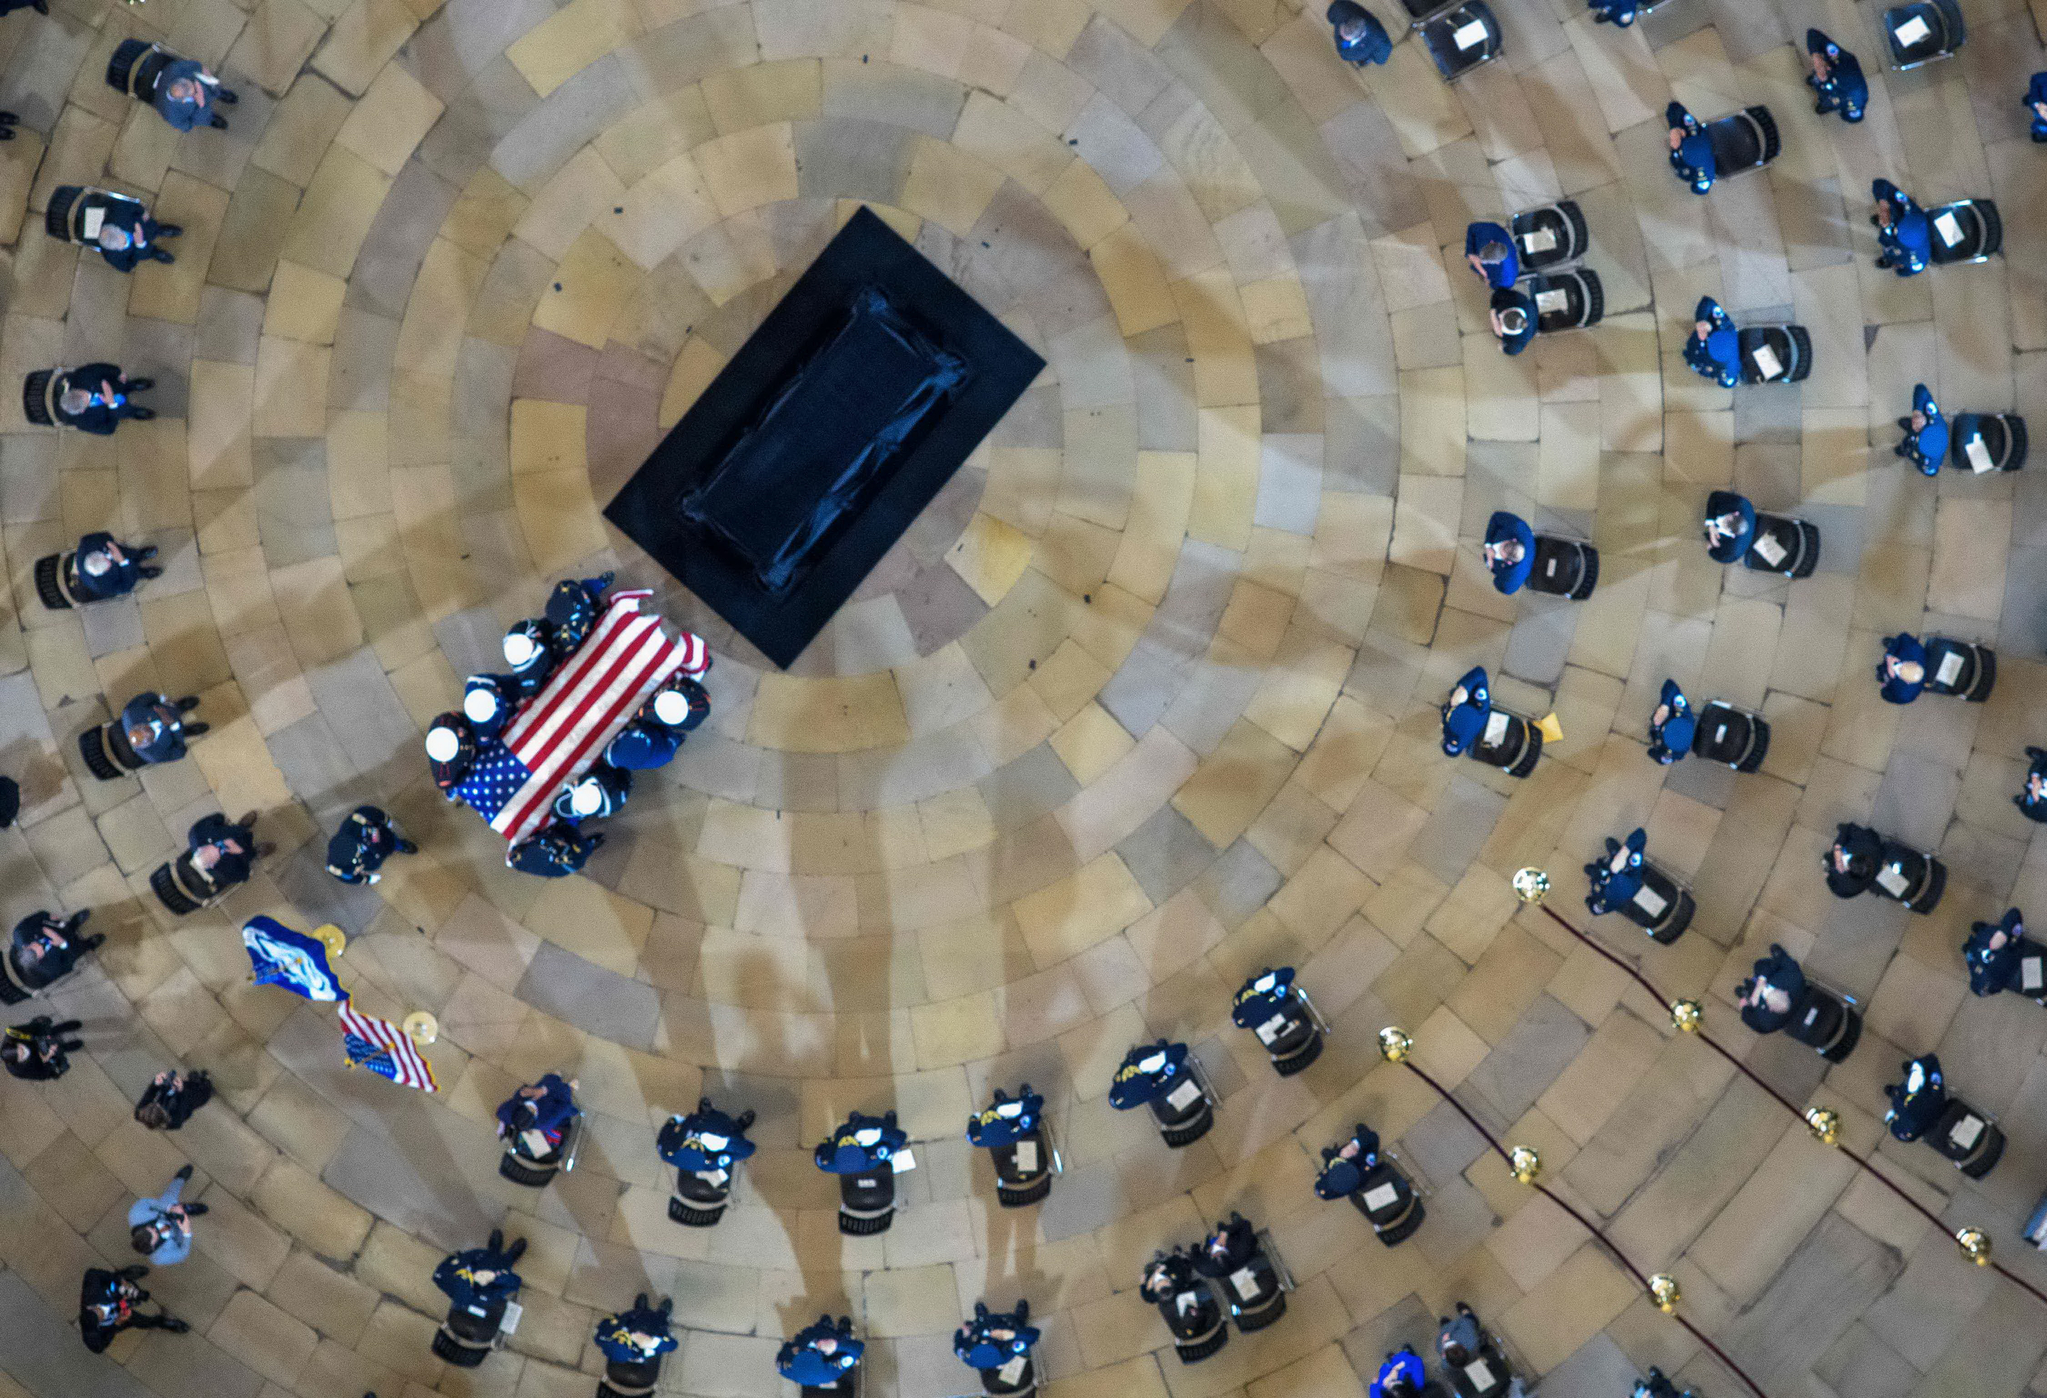 에번스 경관의 관이 추모식이 열린 연방의사당 로툰다홀 한가운데 놓여 있다. 의사당에 관을 공개적으로 두는 추모행사는 미국 의회가 숨진 민간인을 기리는 가장 높은 명예 중 하나다. AFP=연합뉴스